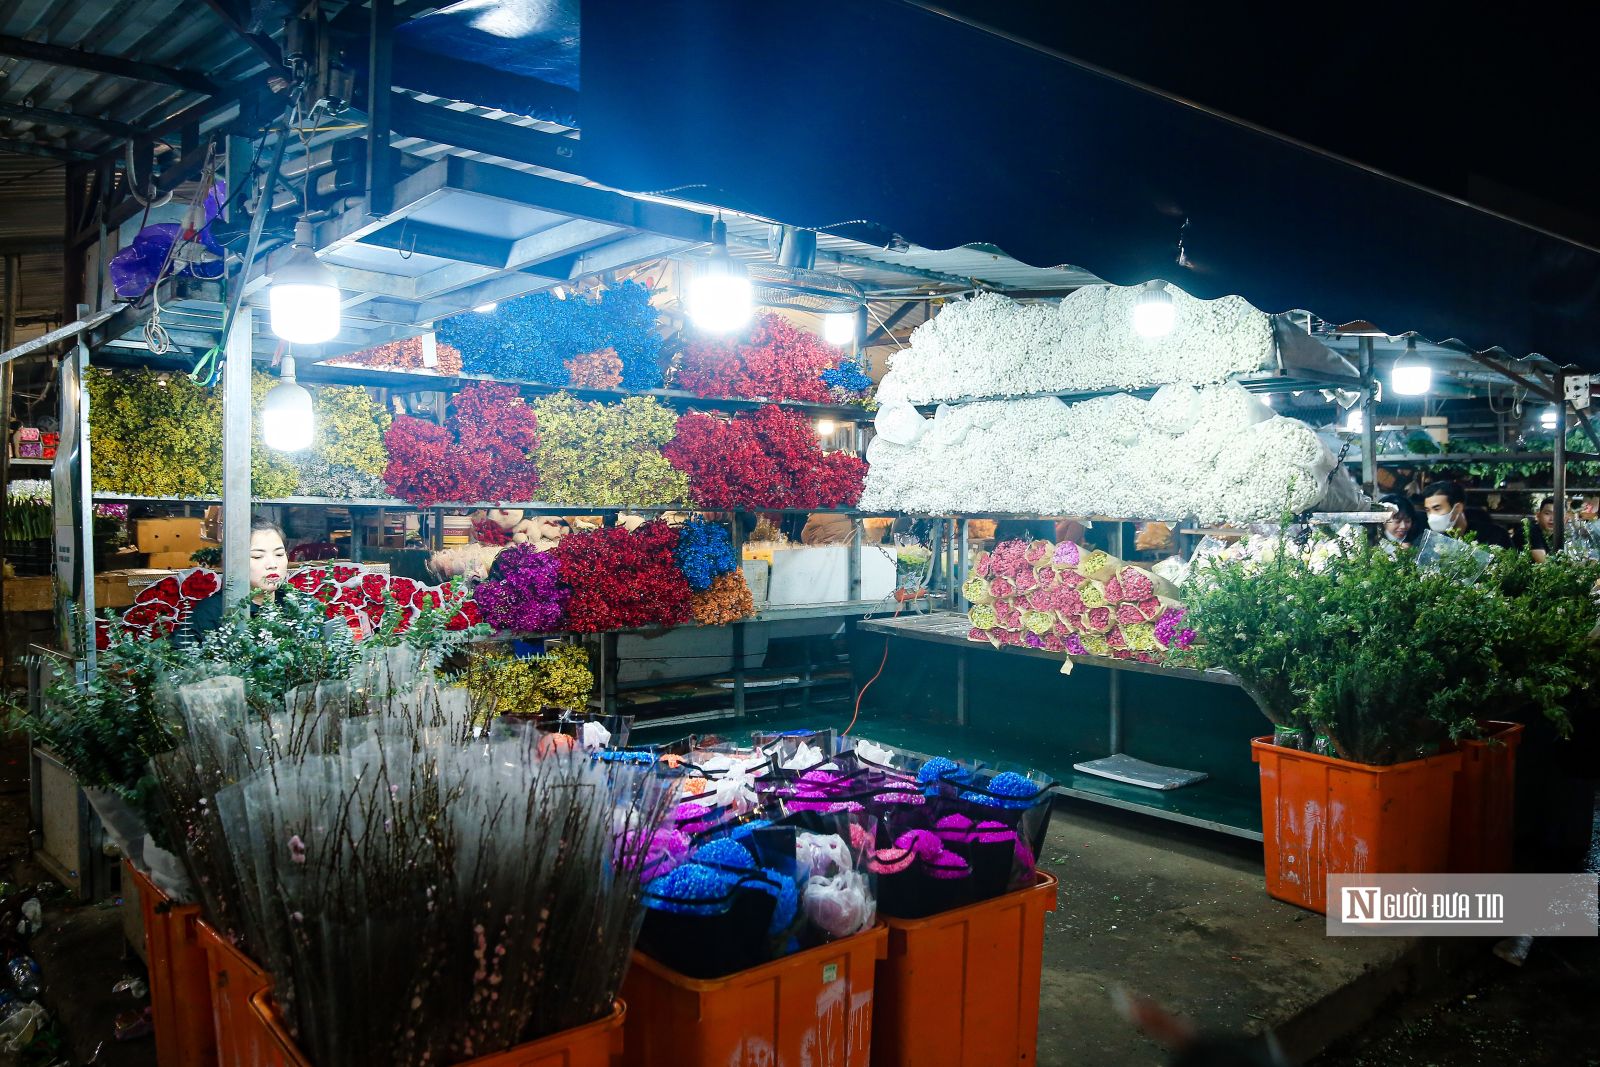 Khung cảnh tấp nập tại chợ hoa Quảng An ngày cận Tết